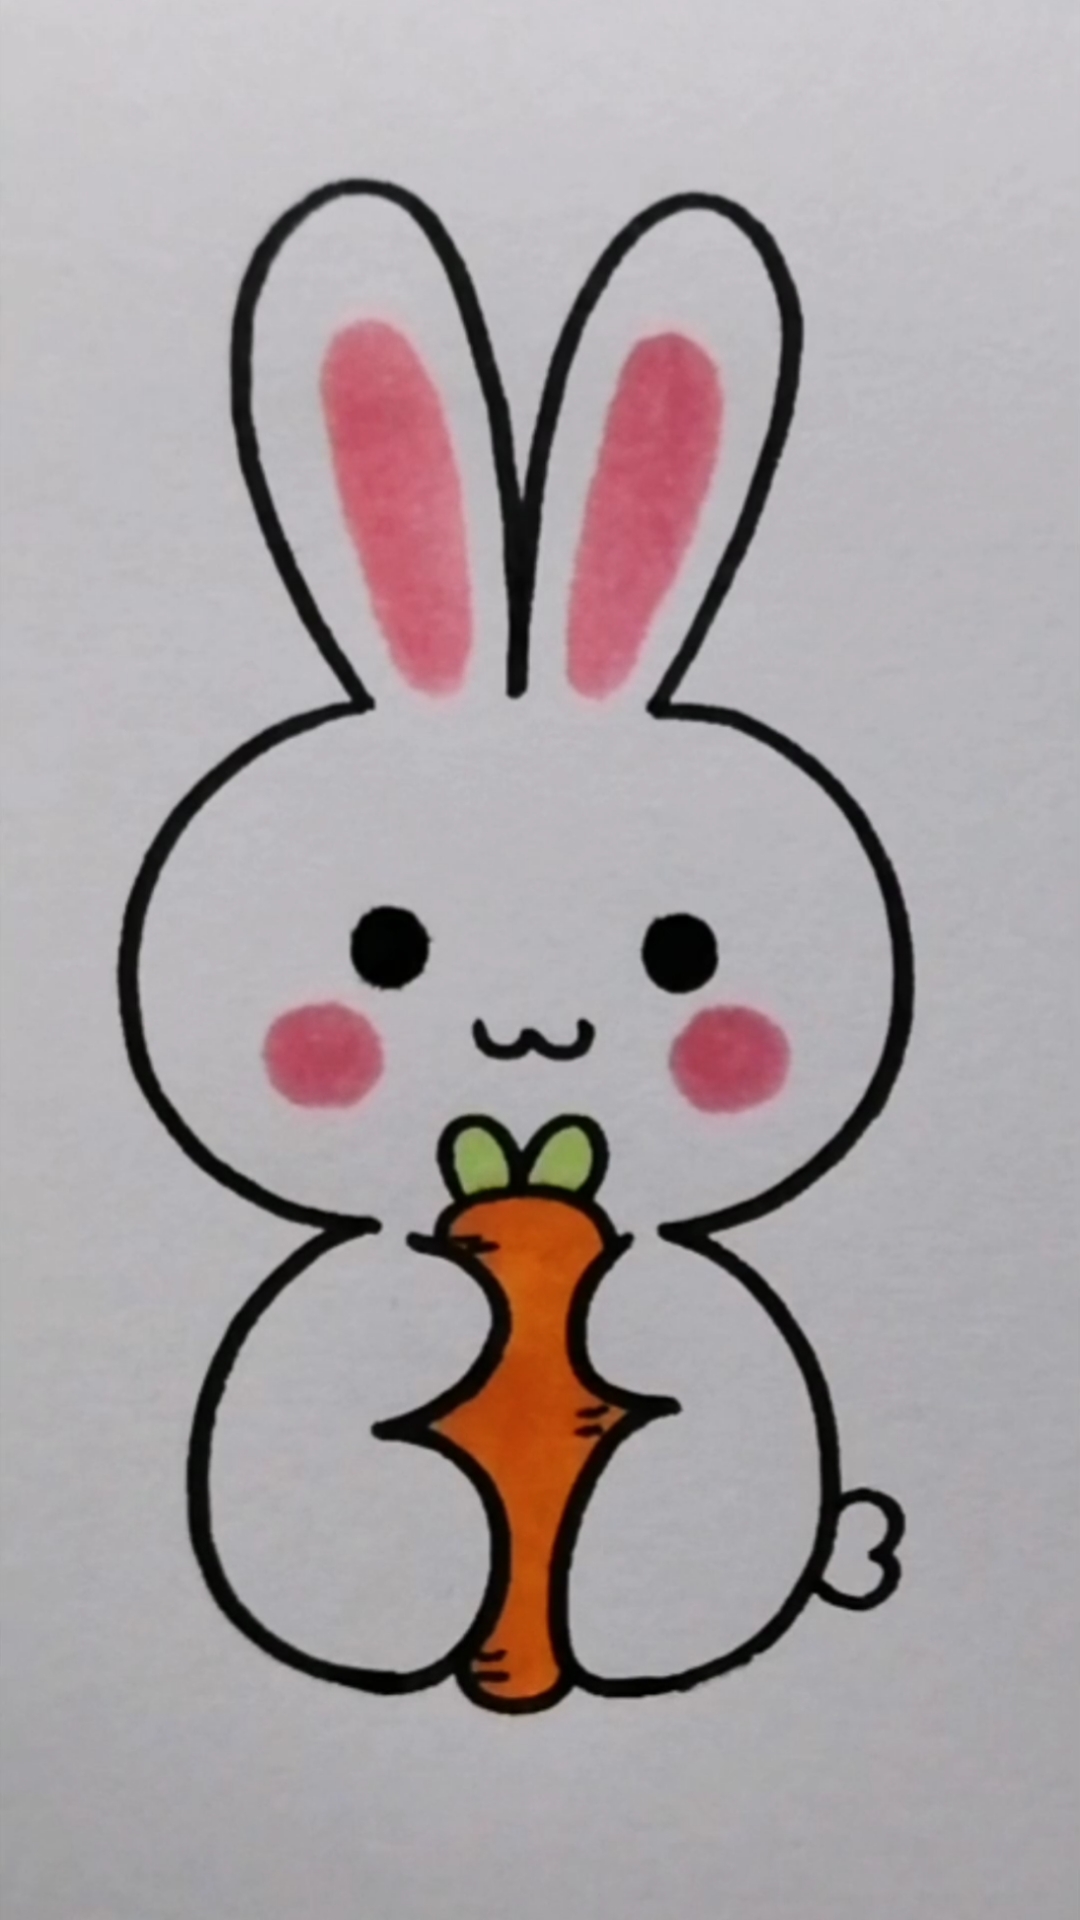 画可爱的小白兔图画图片